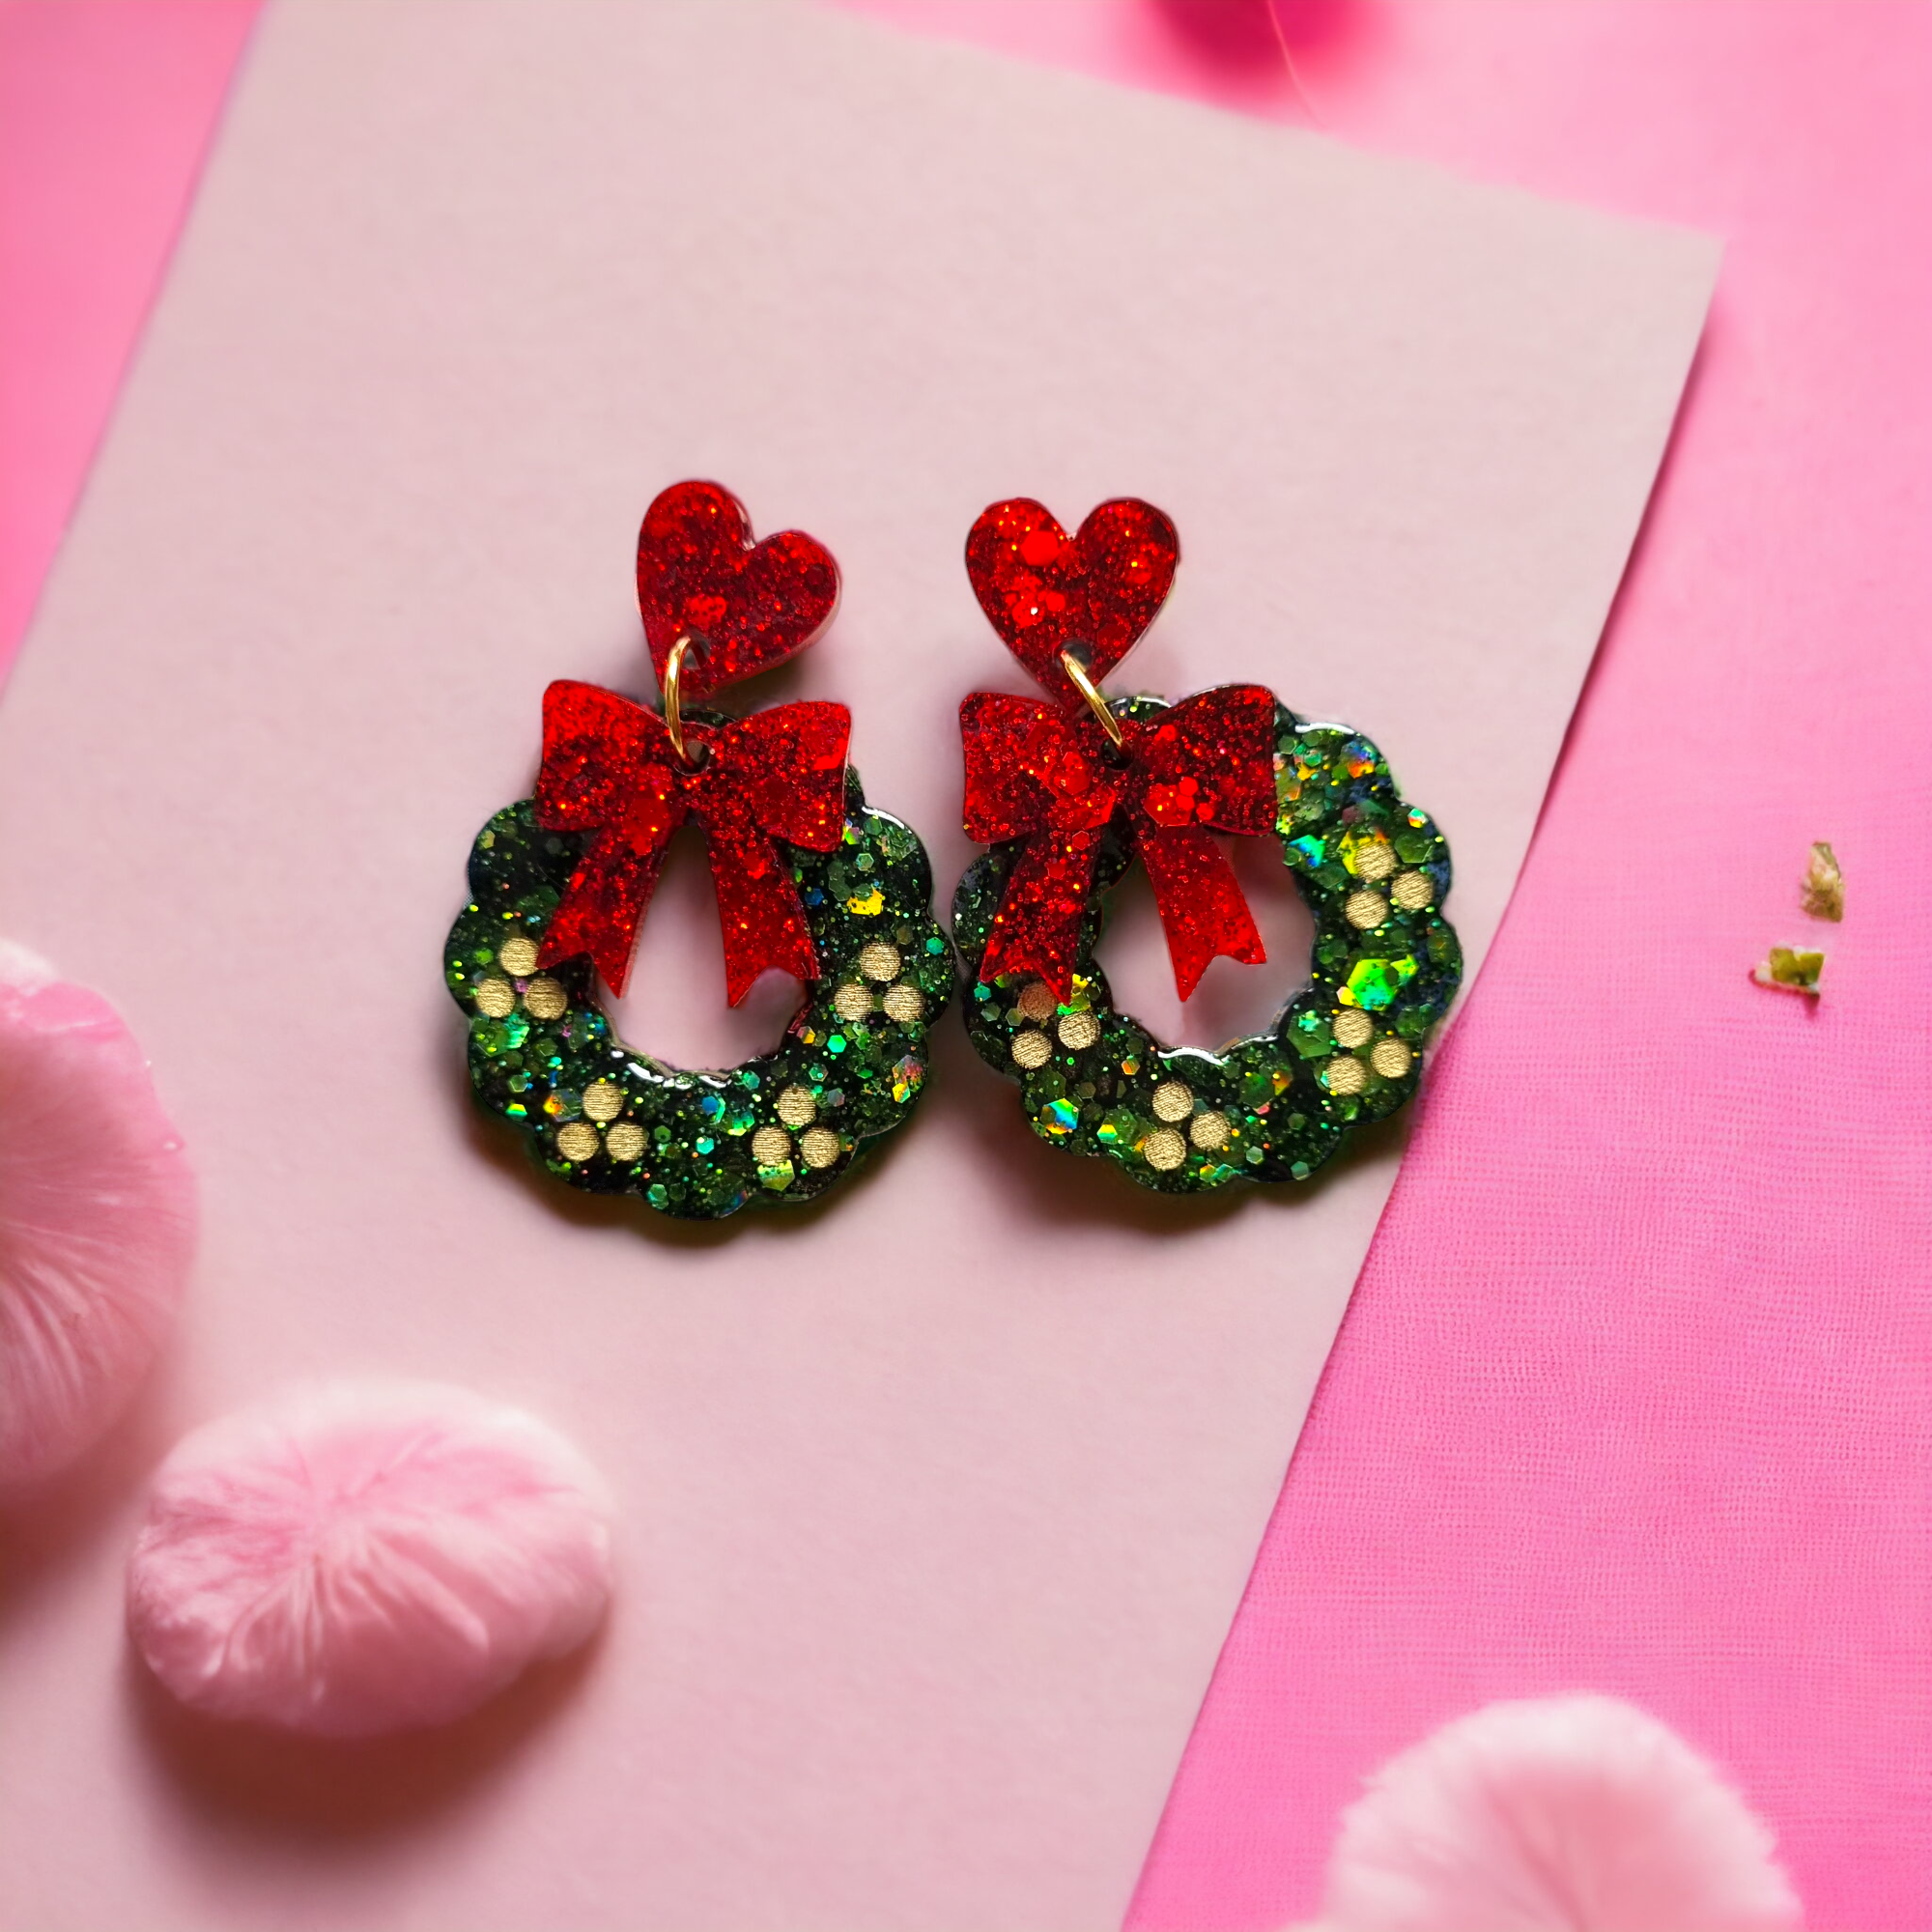 Statement wreath earrings